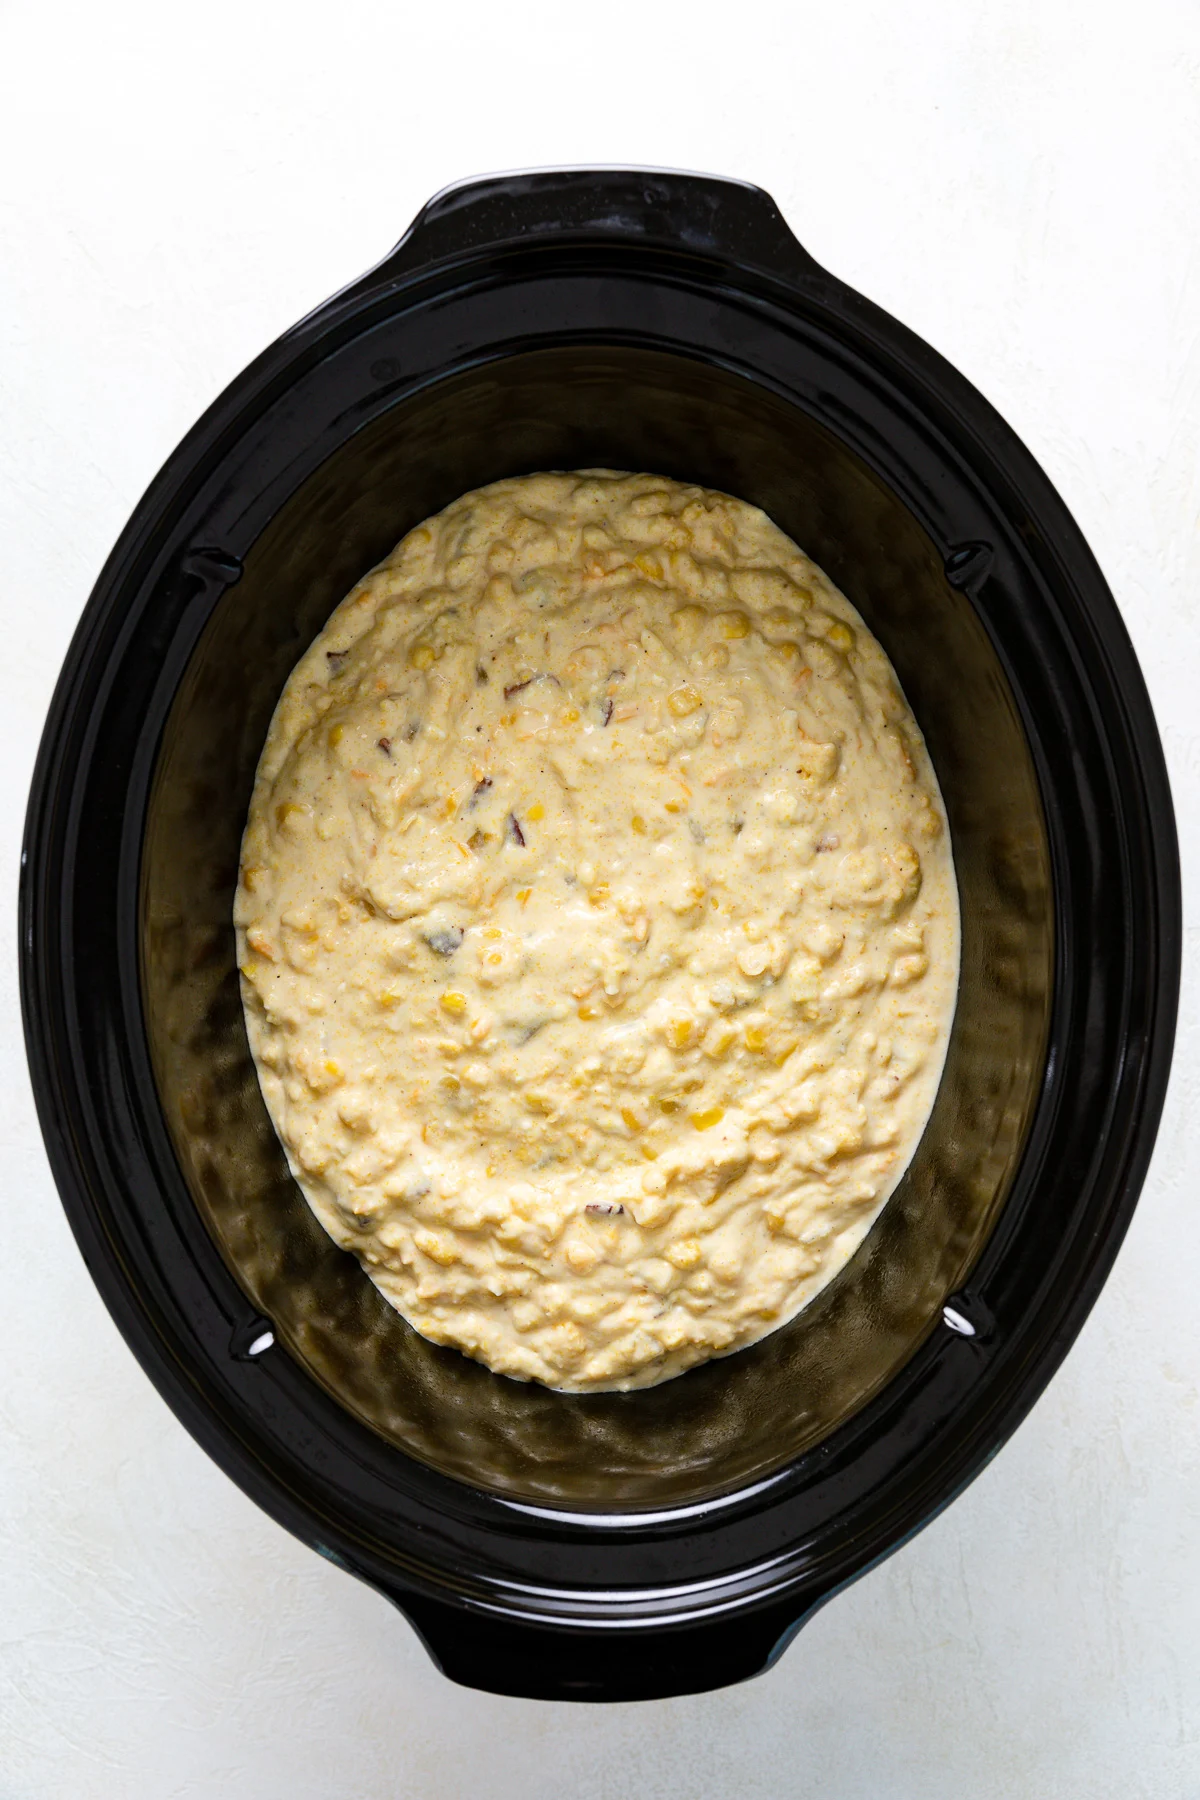 Corn casserole batter poured into a crock pot.